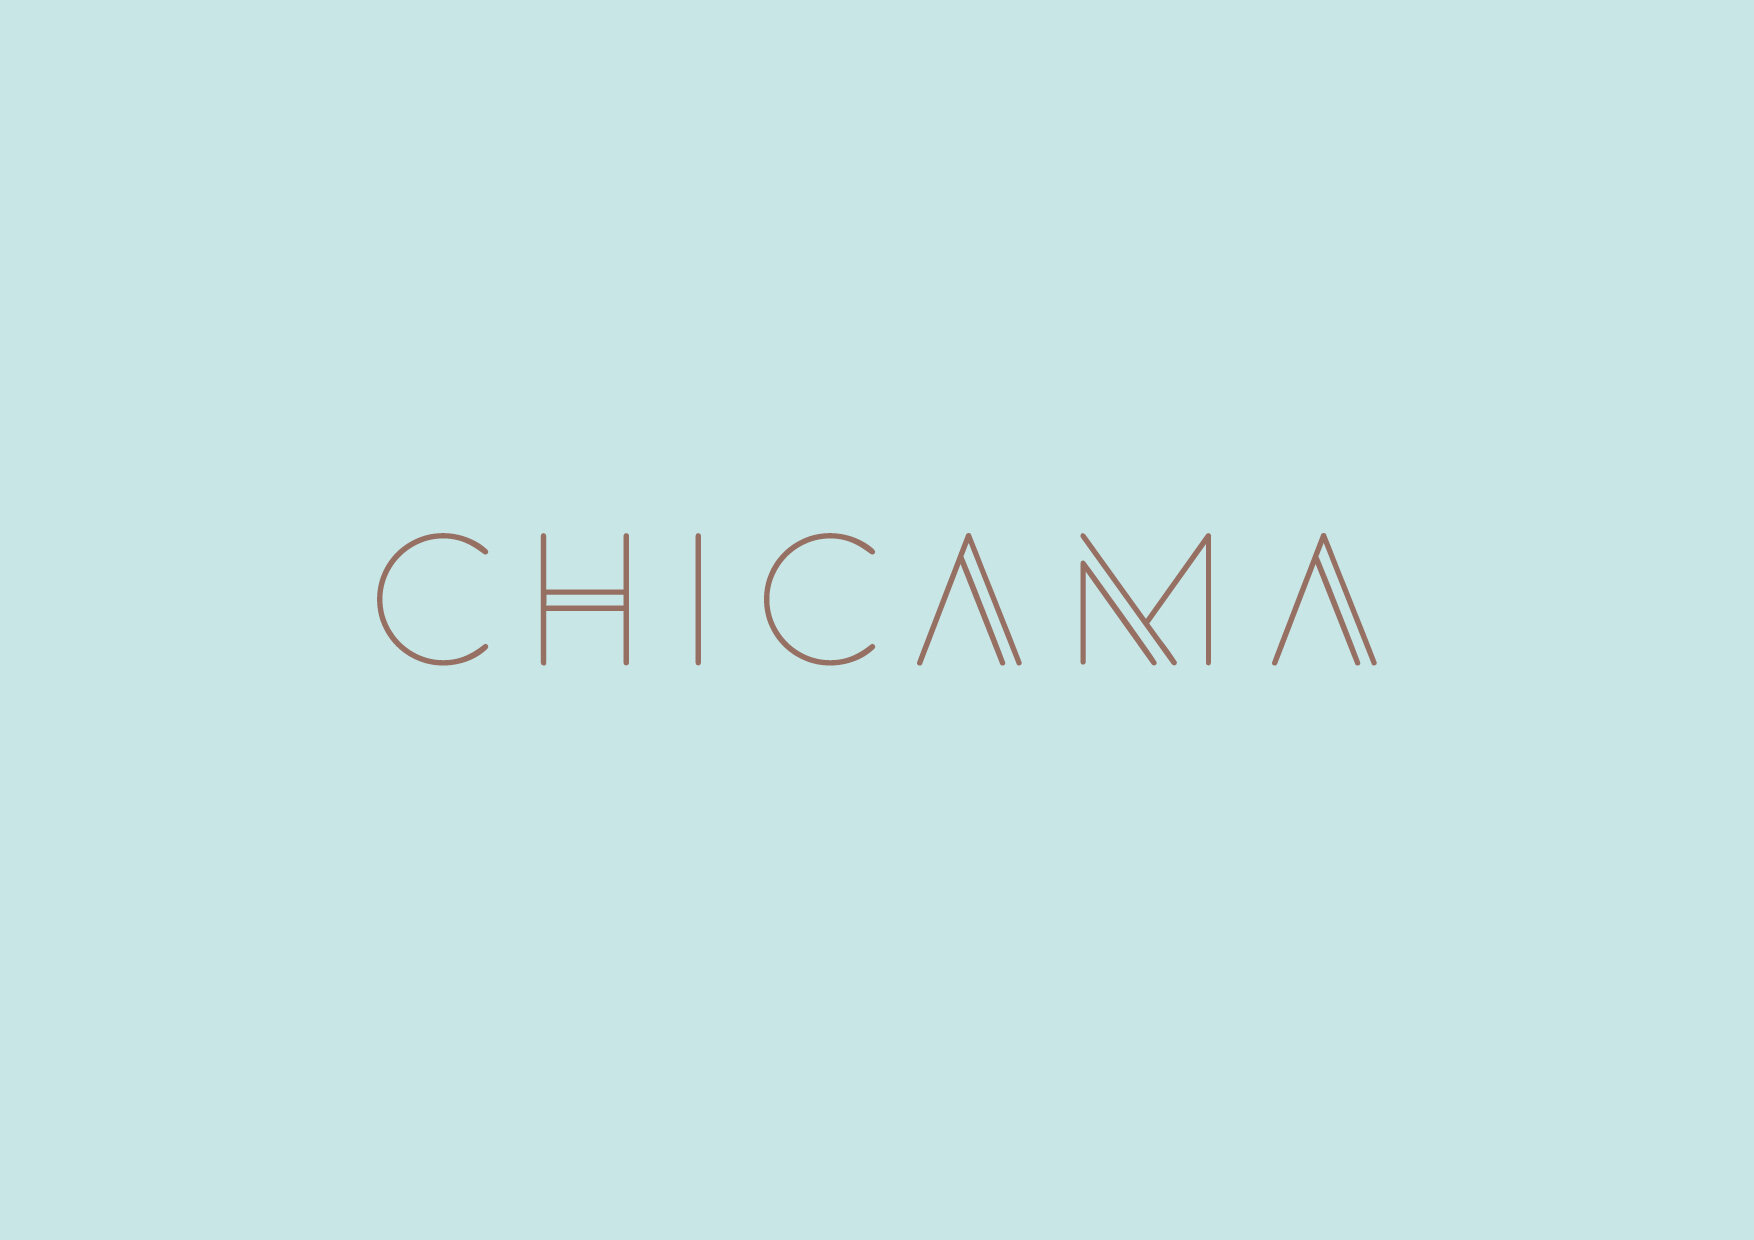 Chicama logo